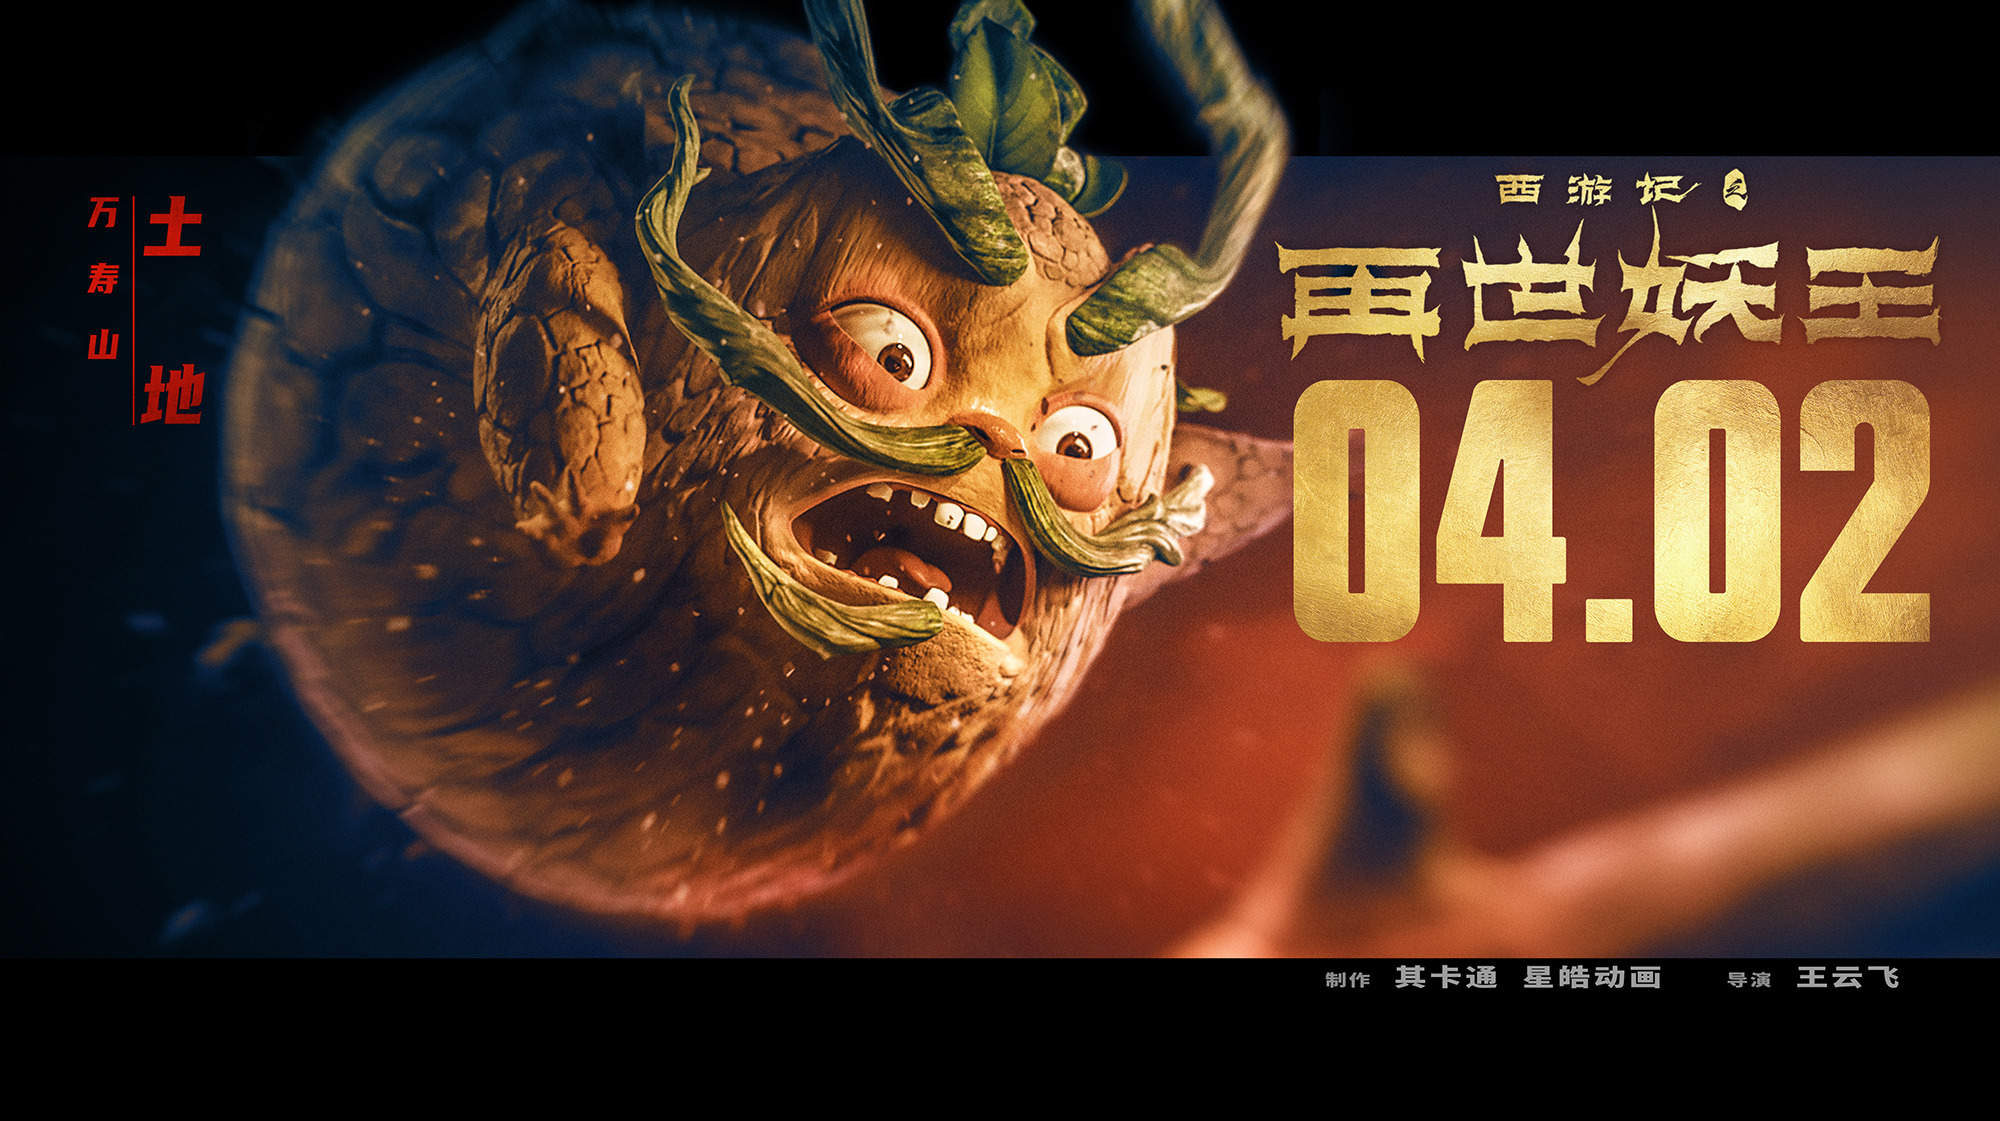 Mega Sized Movie Poster Image for Xi You Ji Zhi Zai Shi Yao Wang (#7 of 21)